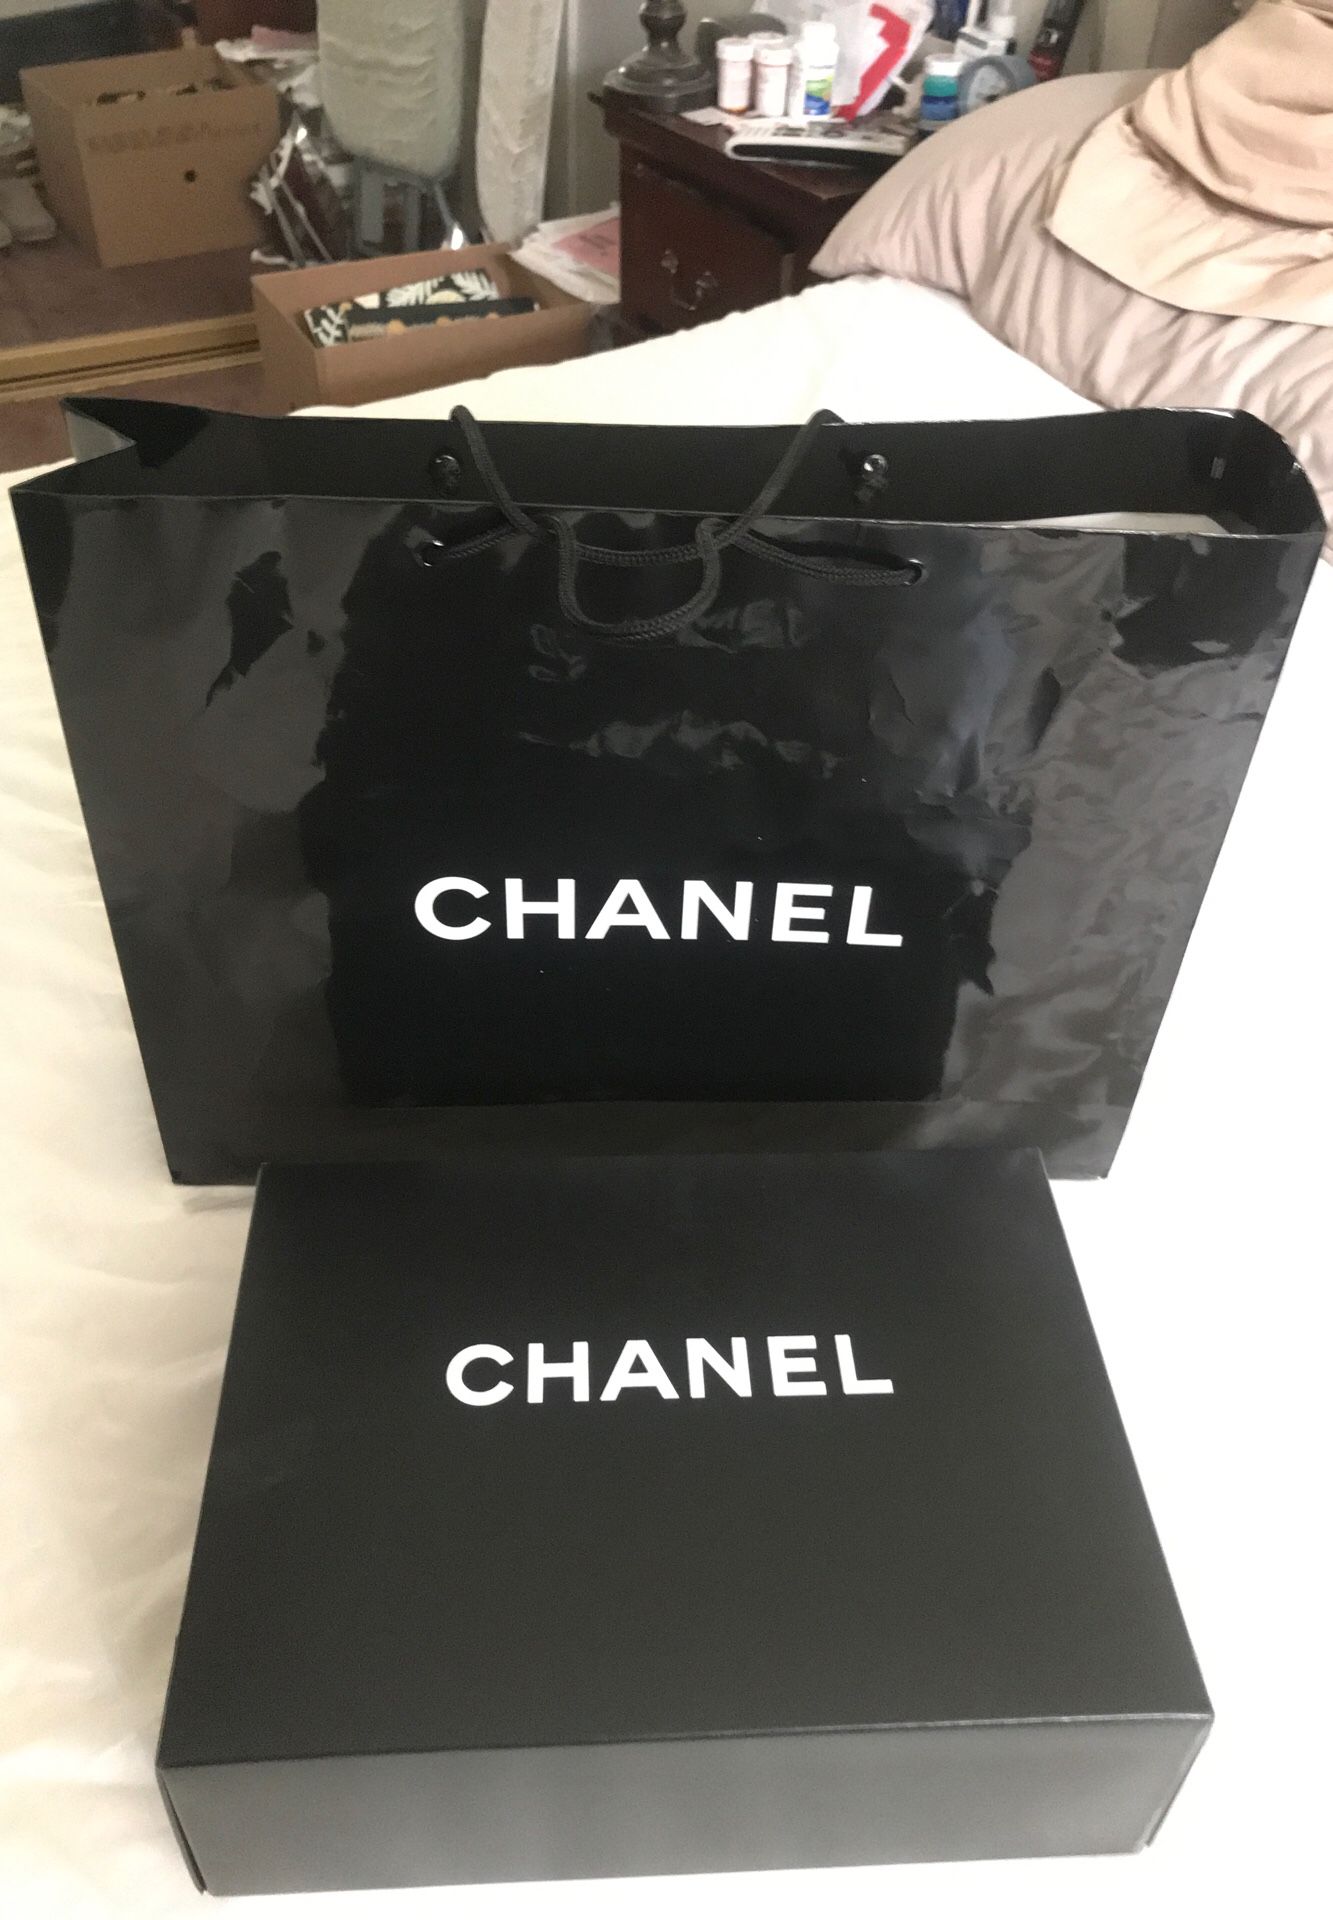 Chanel box and bag